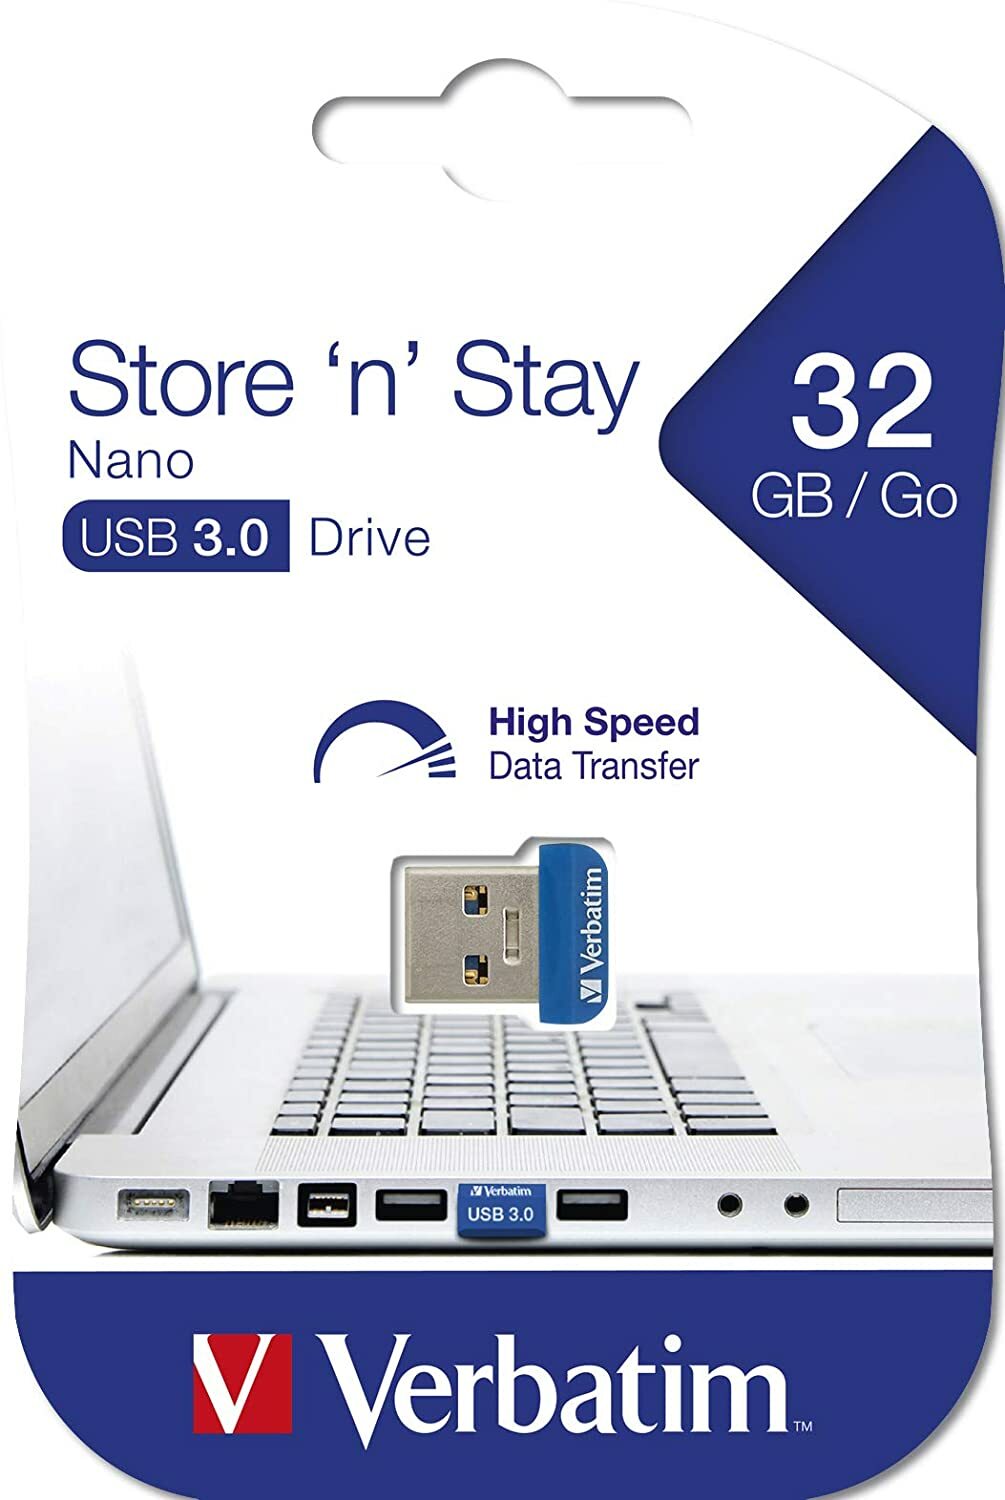 Verbatim Store 'n' Stay NANO 98710 32GB USB3.0